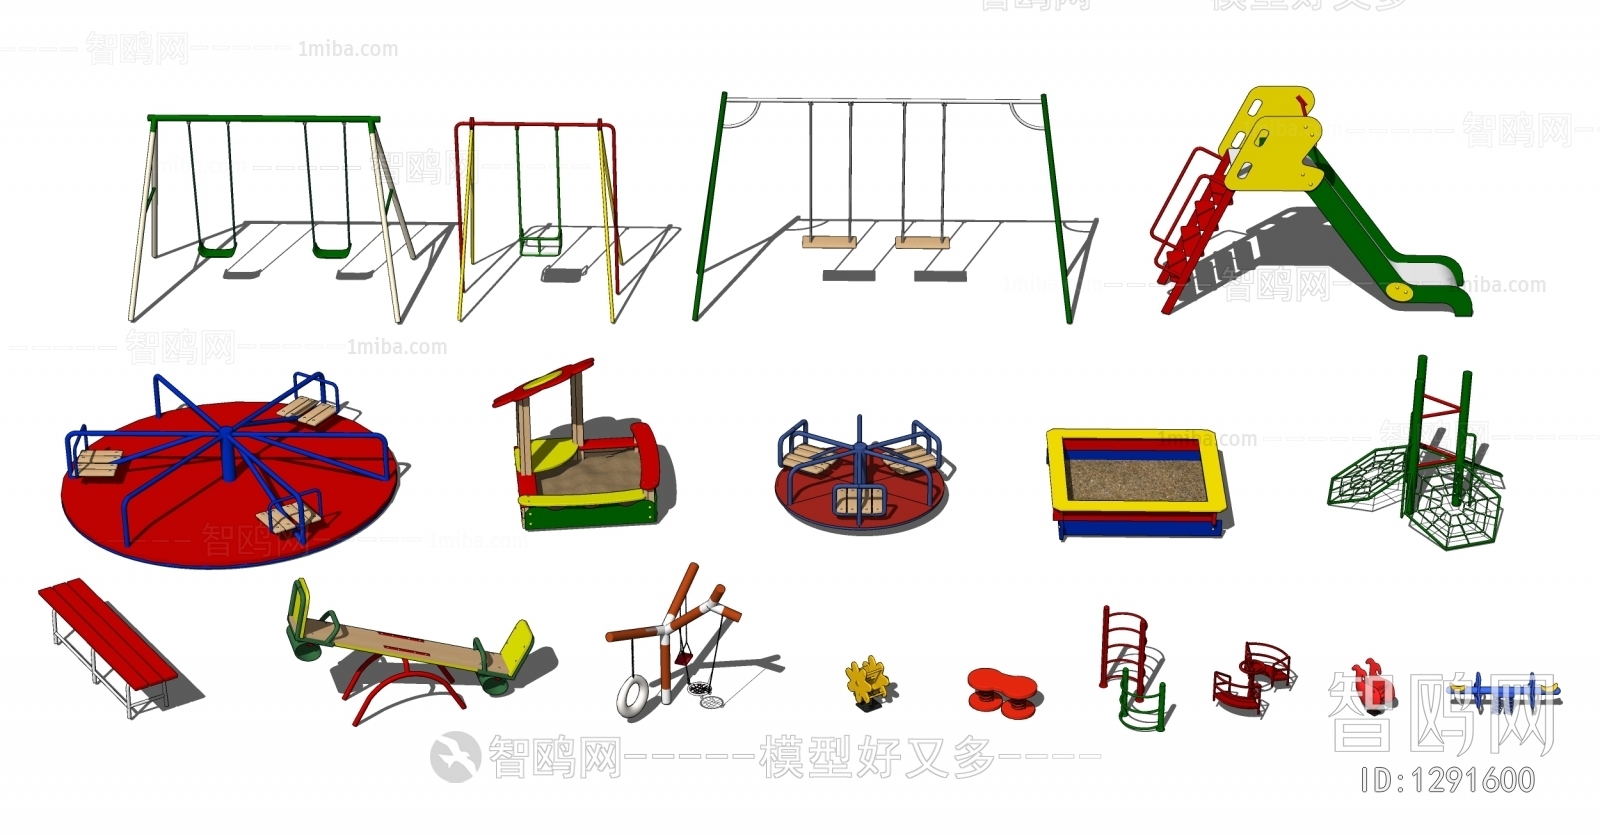 现代儿童器材组合 游乐设施 娱乐设备 攀爬架 秋千 跷跷板